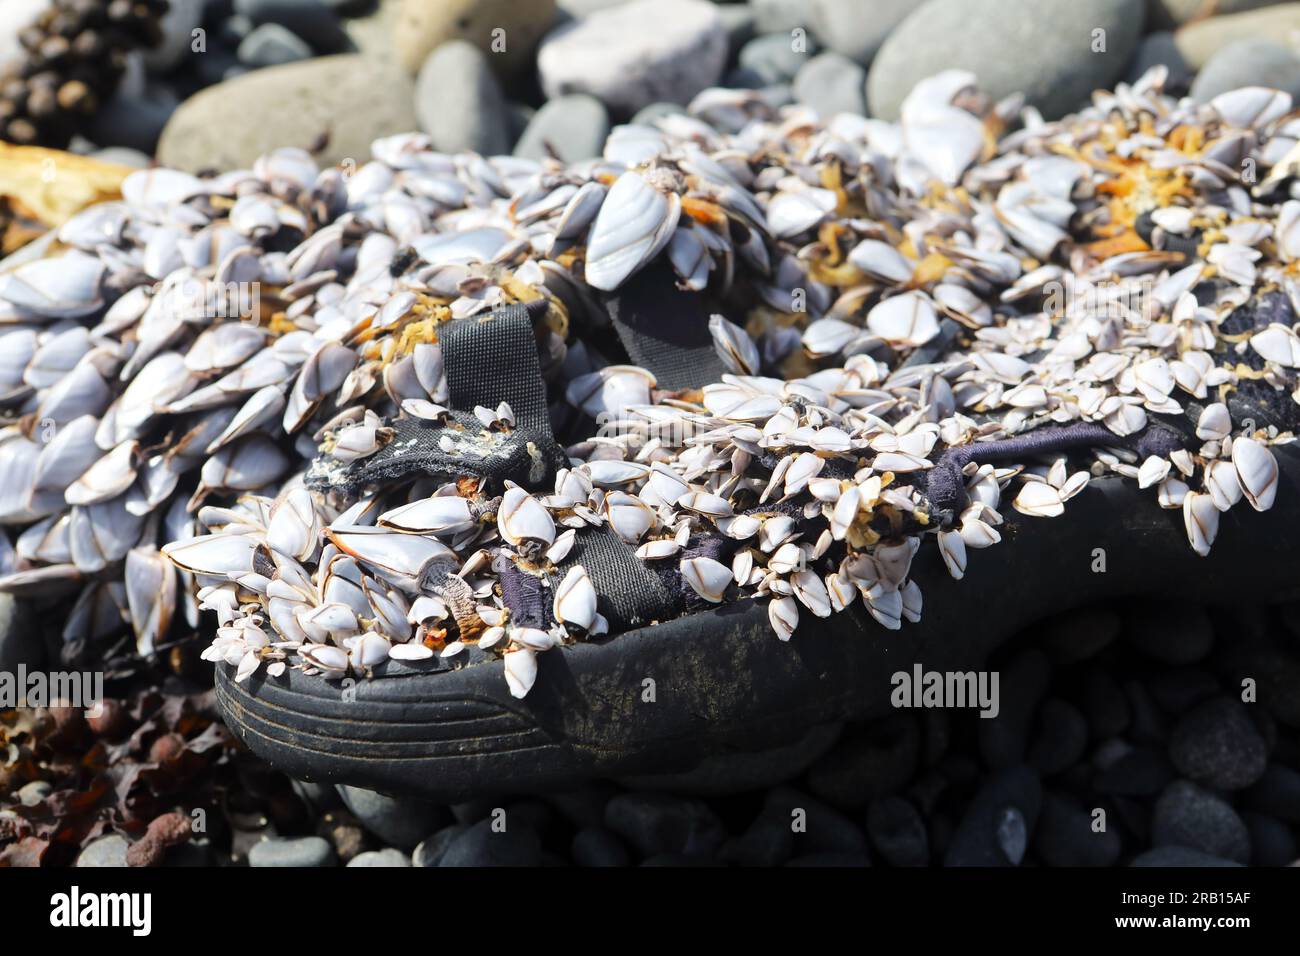 Desechos humanos en forma de sandalia de plástico desechada utilizada como hogar para Goose Barnacles en una playa aislada en las Hébridas Interiores de Escocia Foto de stock